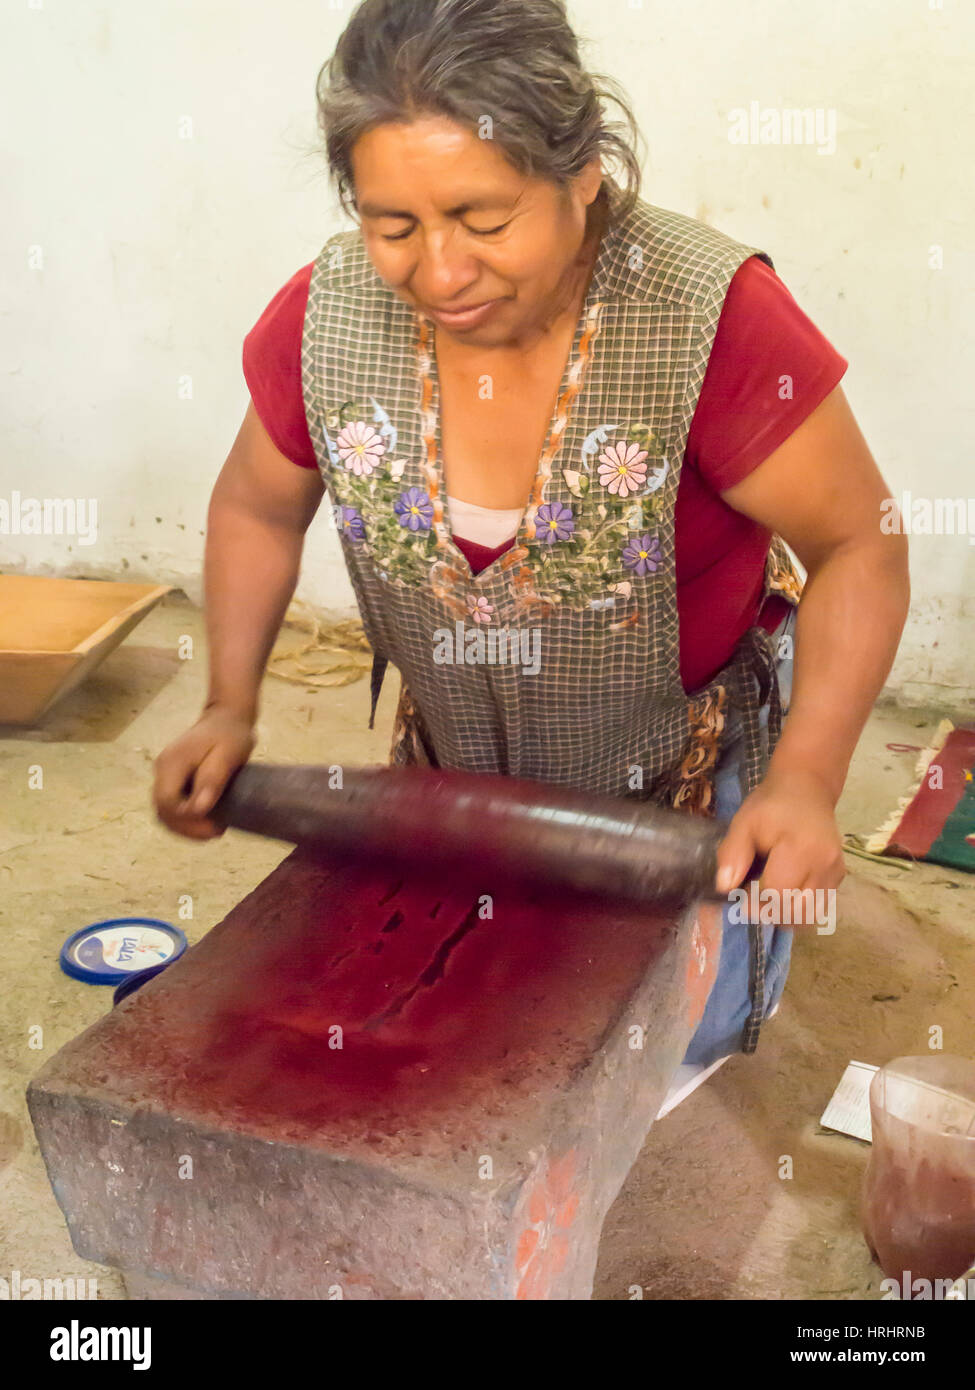 Mujer zapoteca moliendo insectos a hacer valiosas del tinte de la cochinilla, Teotitlan del Valle, Oaxaca, México, América del Norte Foto de stock